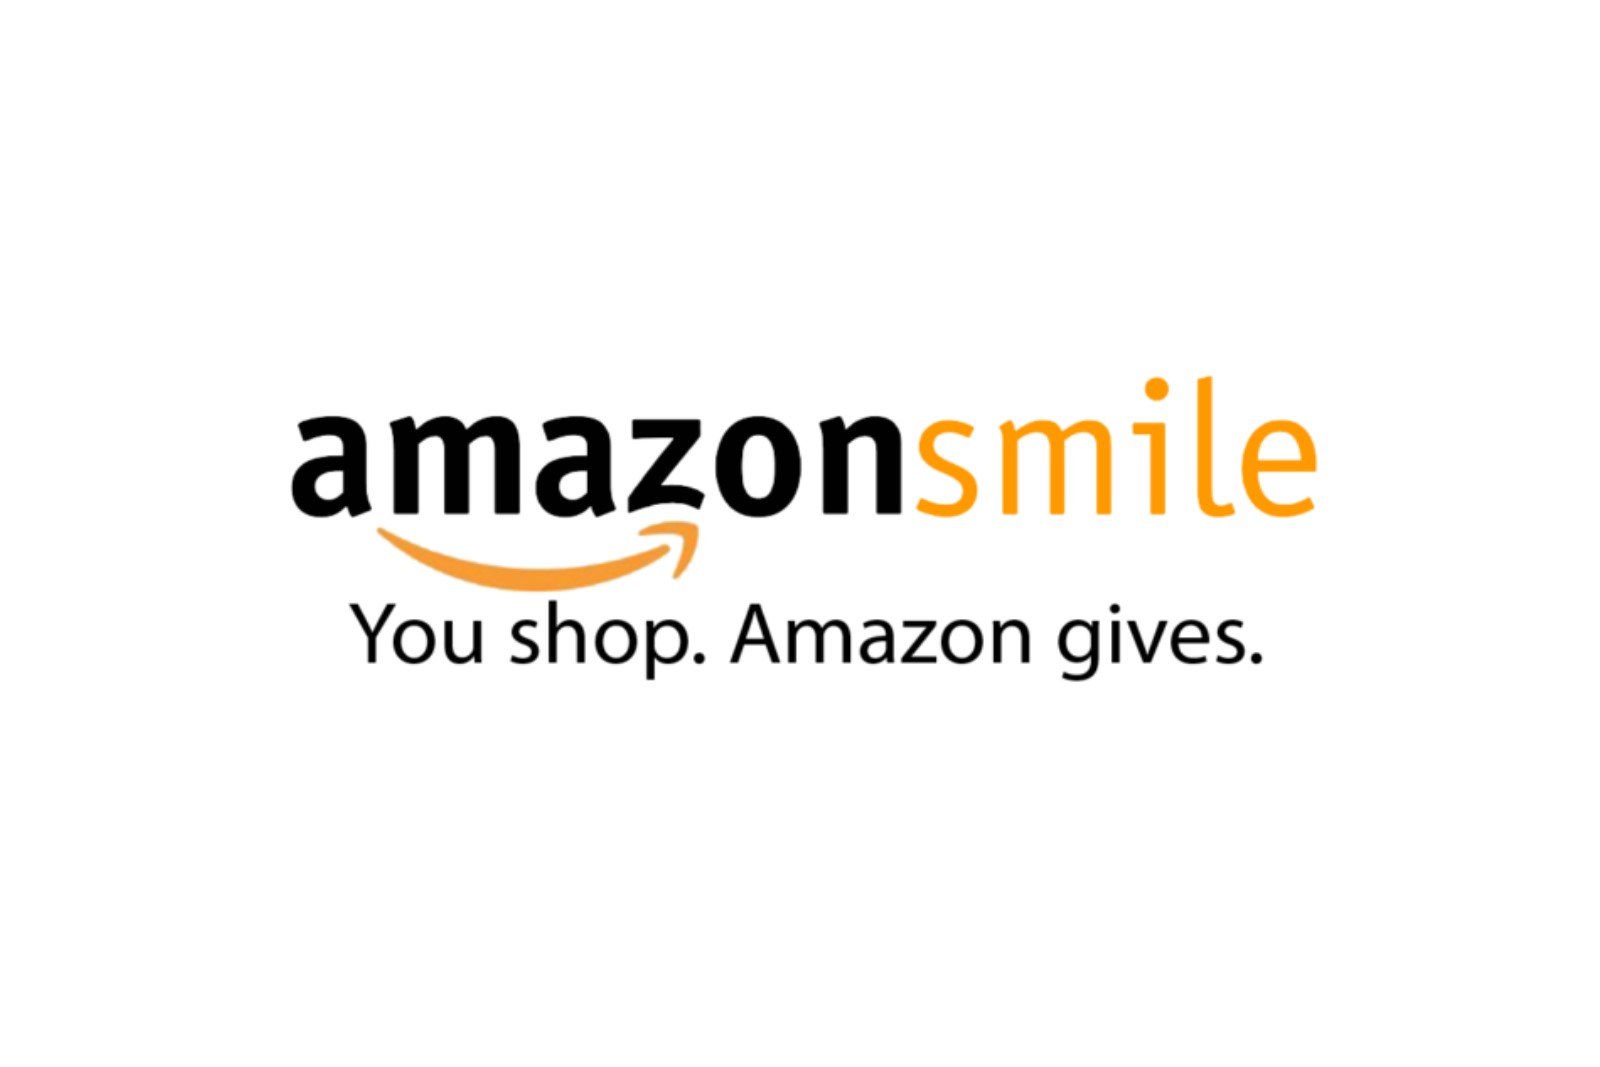 Amazon smile logo.jpg